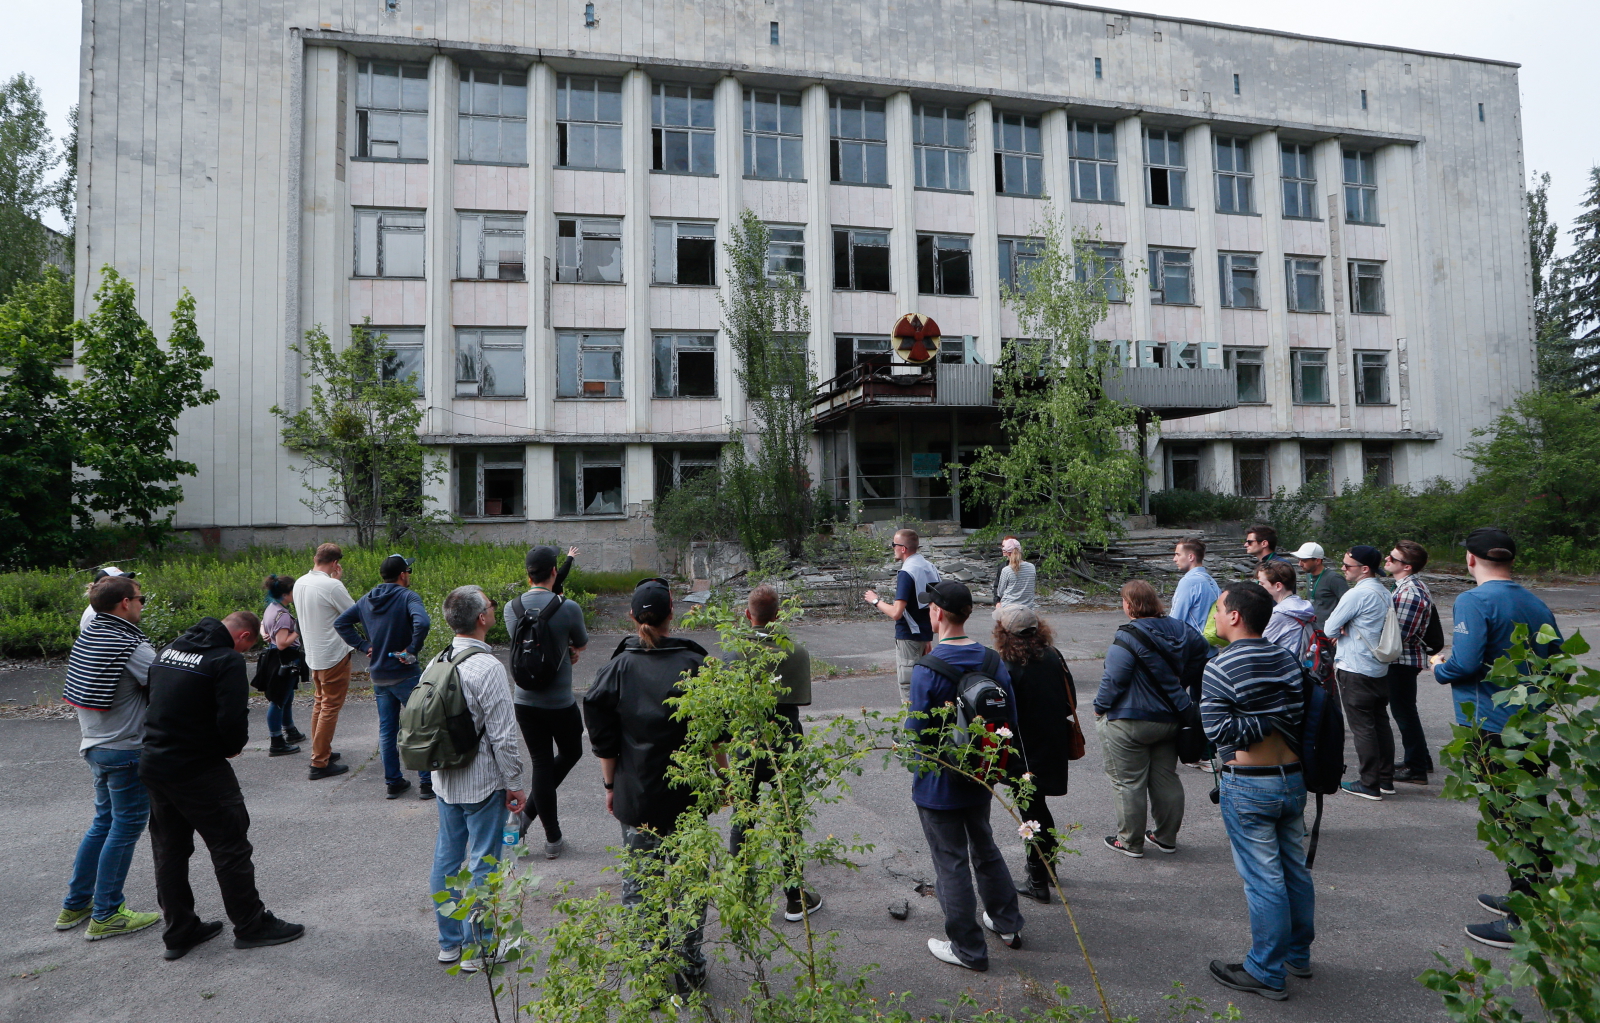 Odwiedzający Prypeć - miasto stworzne dla pracowników elektowni Czarnobyl fot. EPA/SERGEY DOLZHENKO